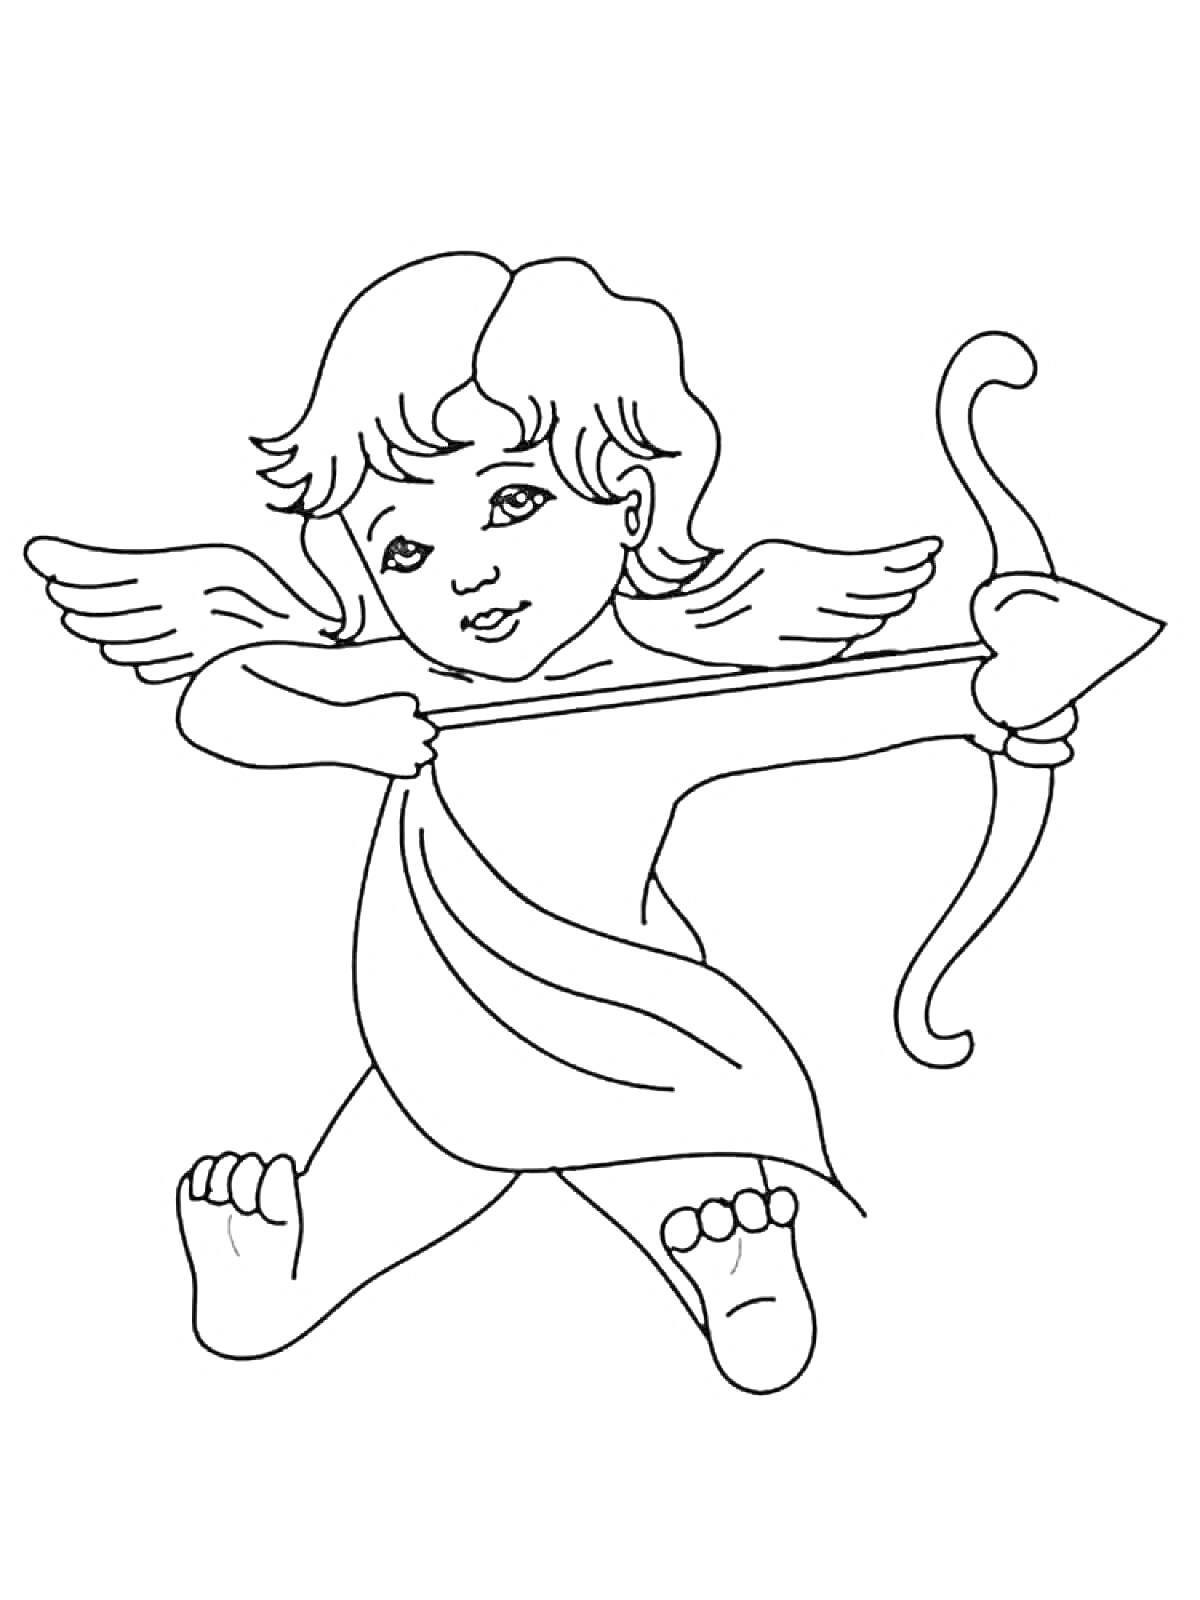 Маленький ангел с крыльями, держащий лук со стрелой в форме сердца